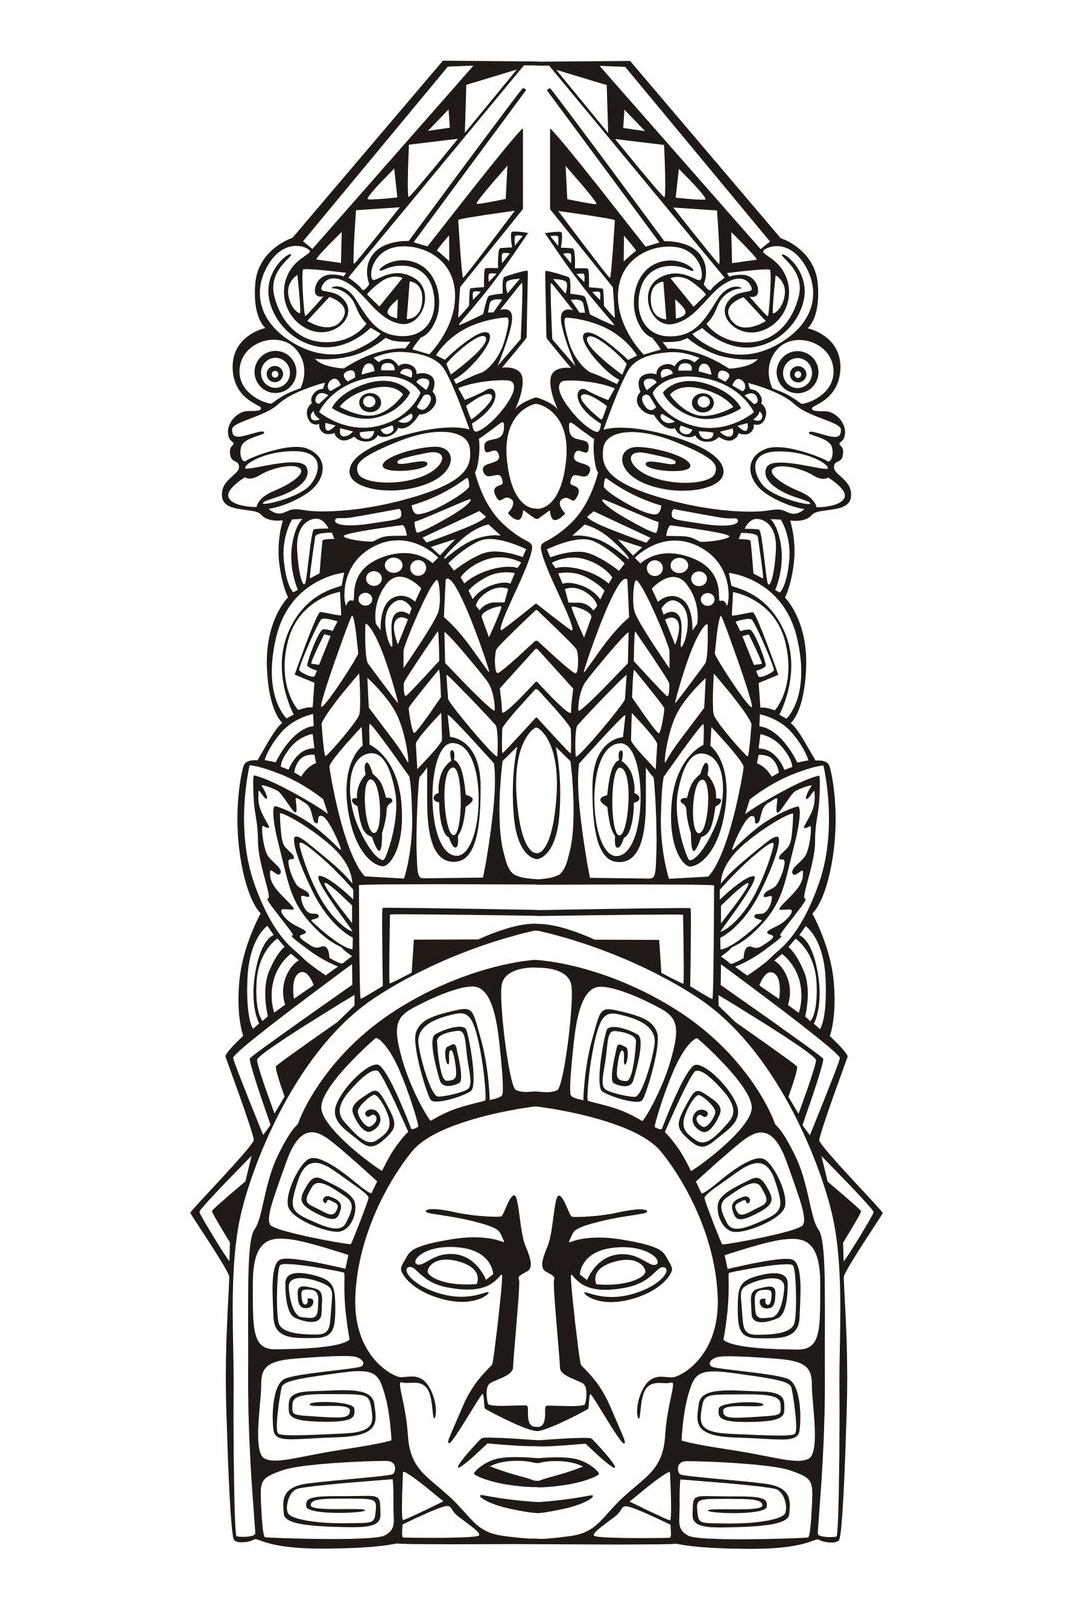 Disegni da colorare per adulti : Maya, Aztechi e Incas - 10, Artista : Rocich   Fonte : 123rf